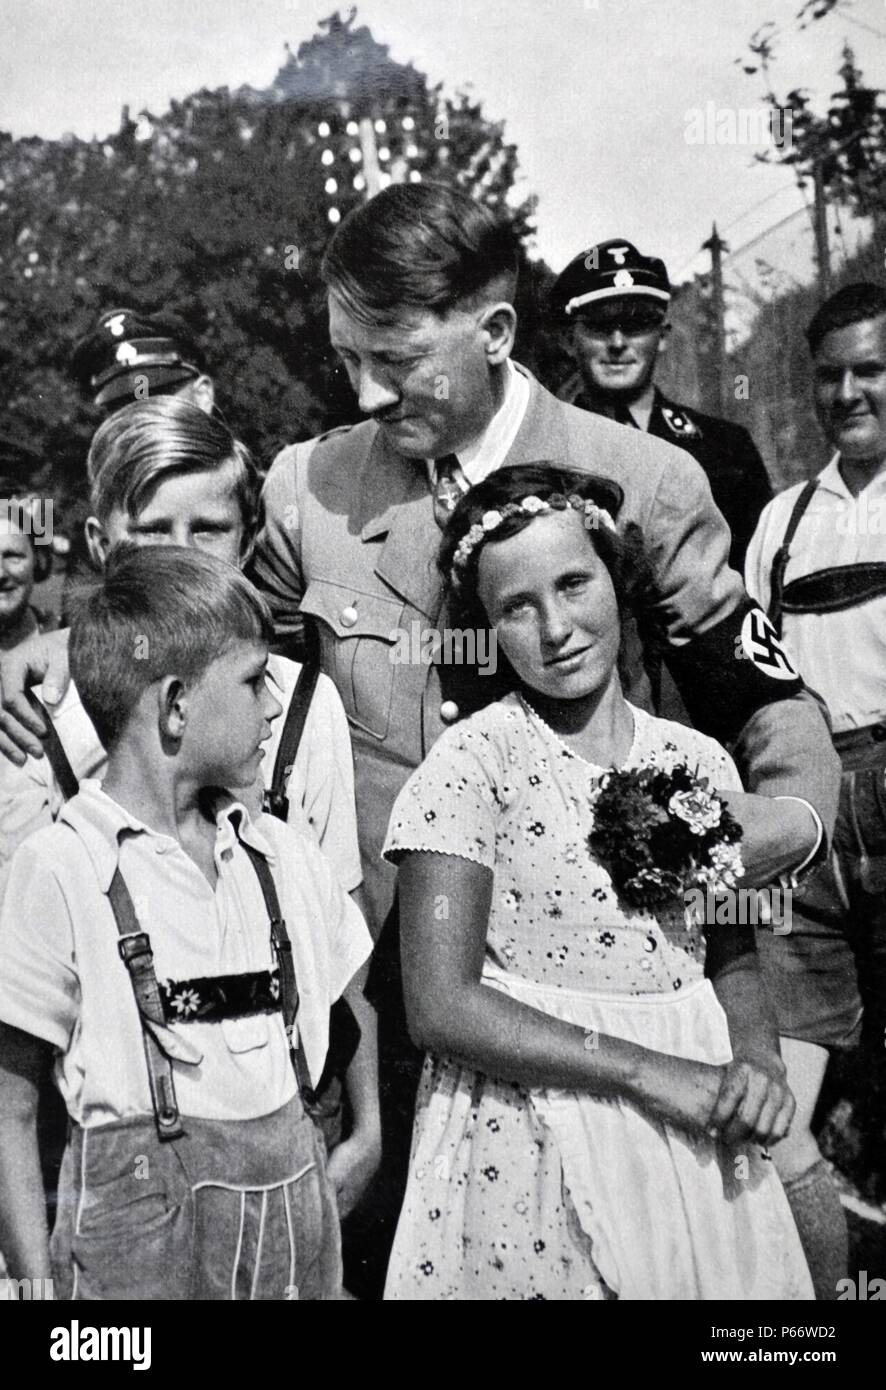 Adolf Hitler 1889 - 1945. Homme politique allemand et le leader du parti nazi, accueilli par la jeunesse hitlérienne comme Baldur von Schirach regarde sur Banque D'Images